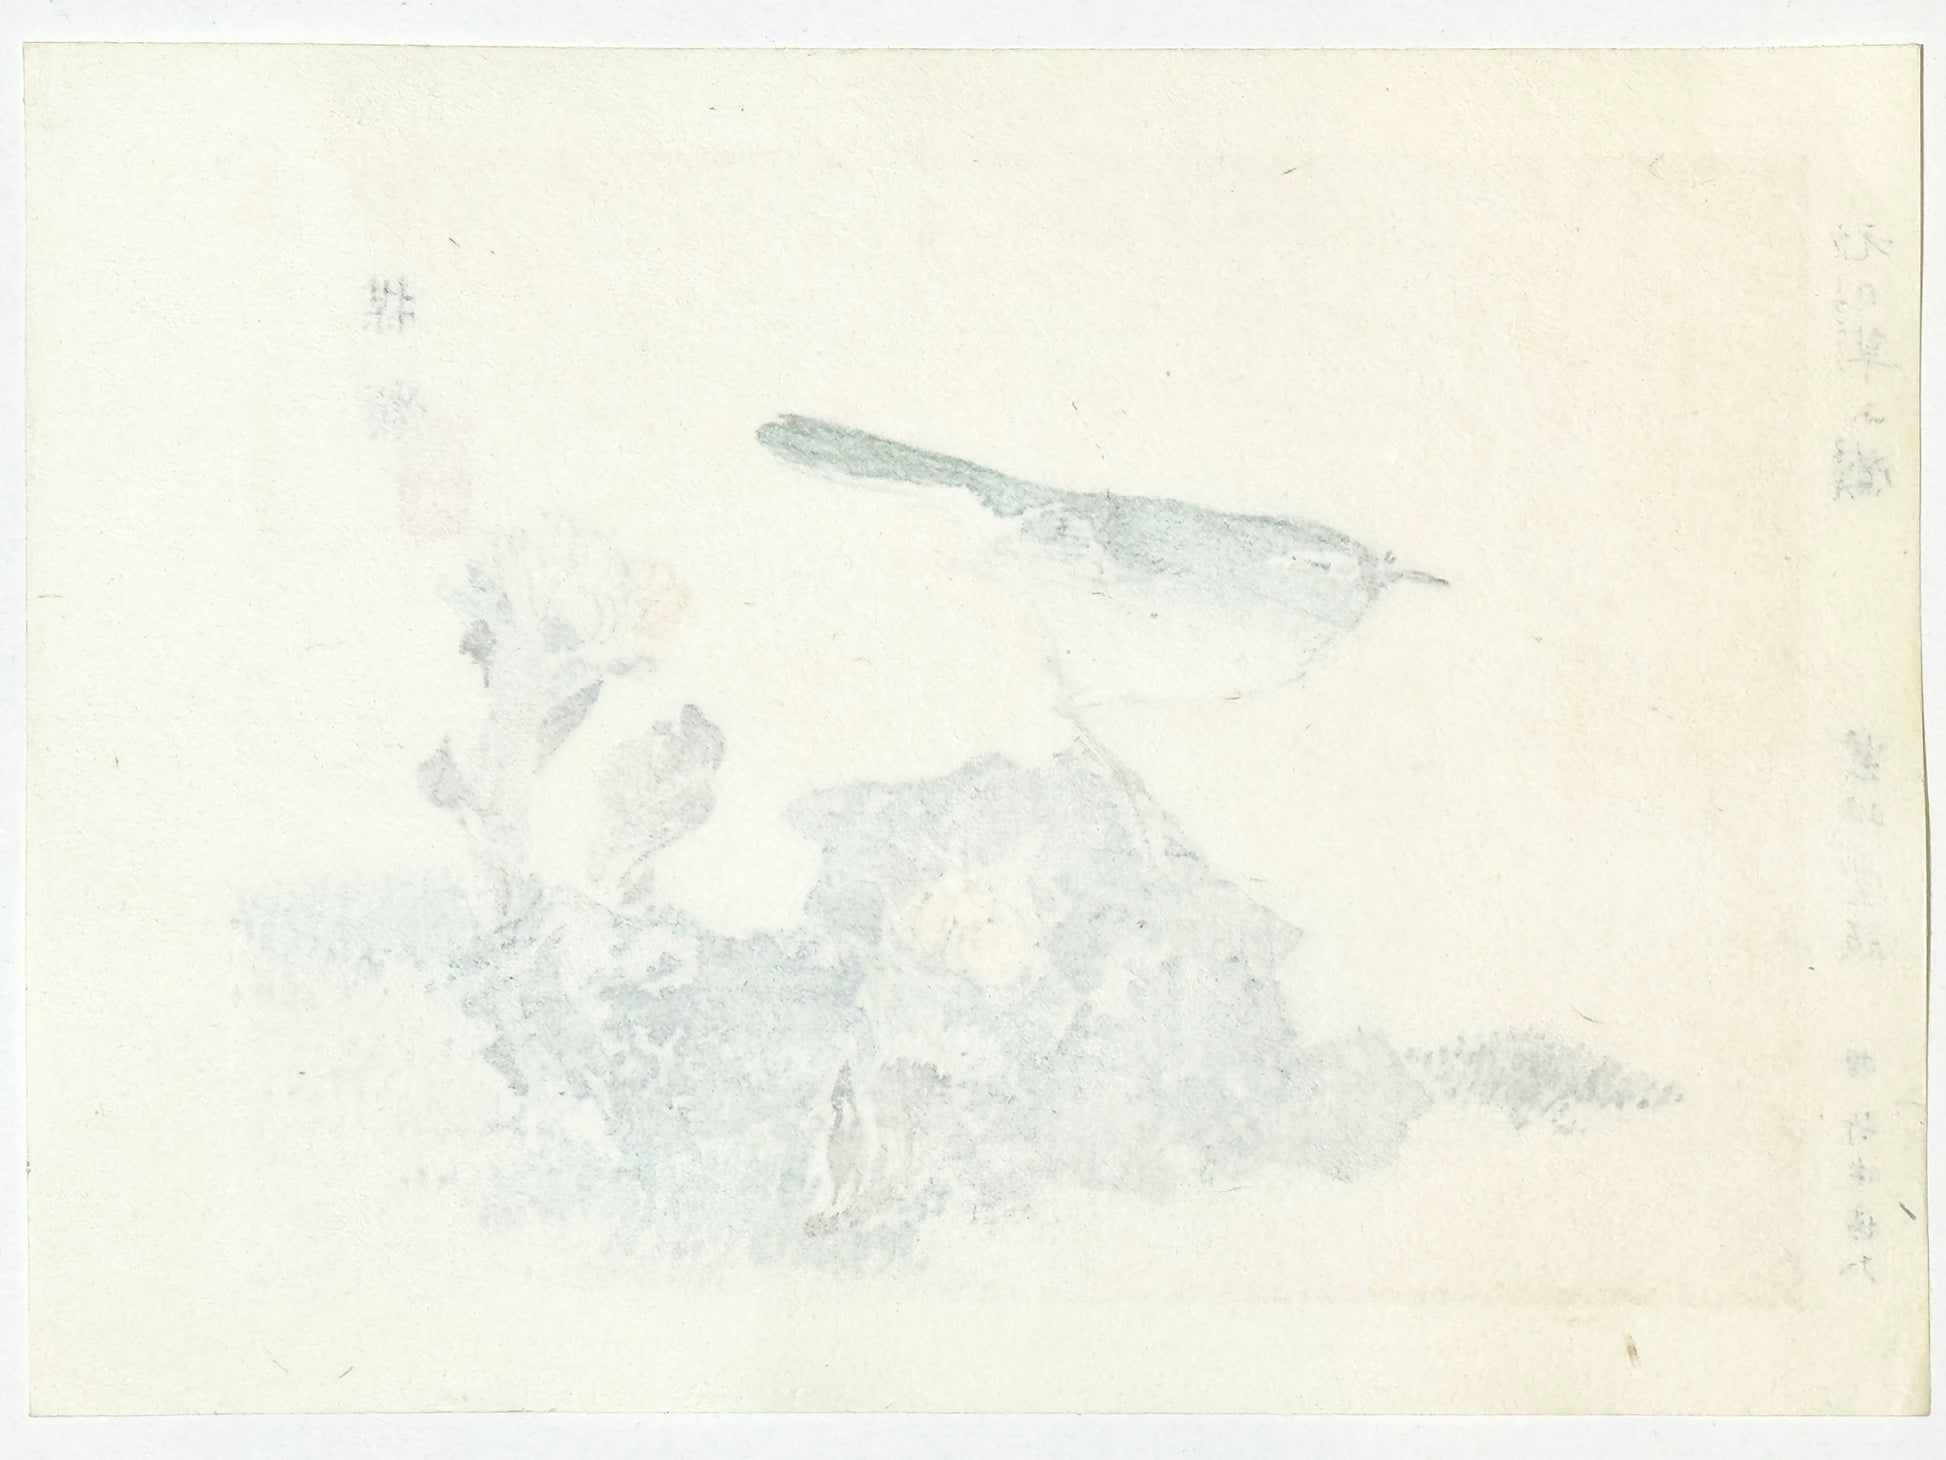 Estampe Japonaise de Kono Bairei, oiseau, Bouscarle chanteuse sur un rocher, dos de l'estampe